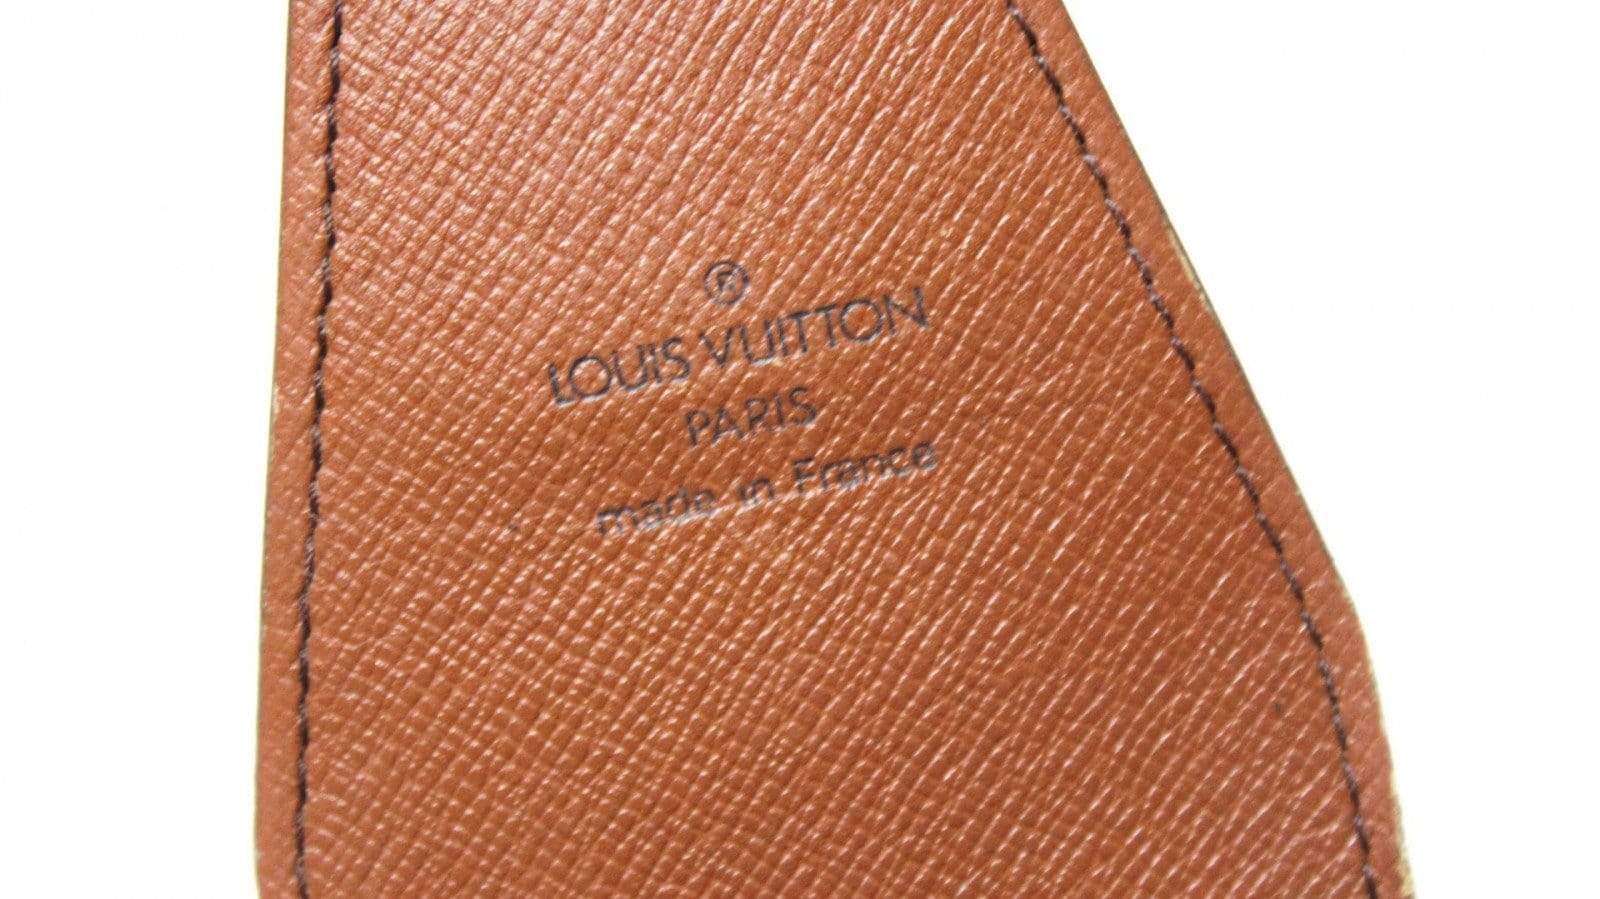 Vintage Louis Vuitton Hard Cigarette Case for Purse Handbag